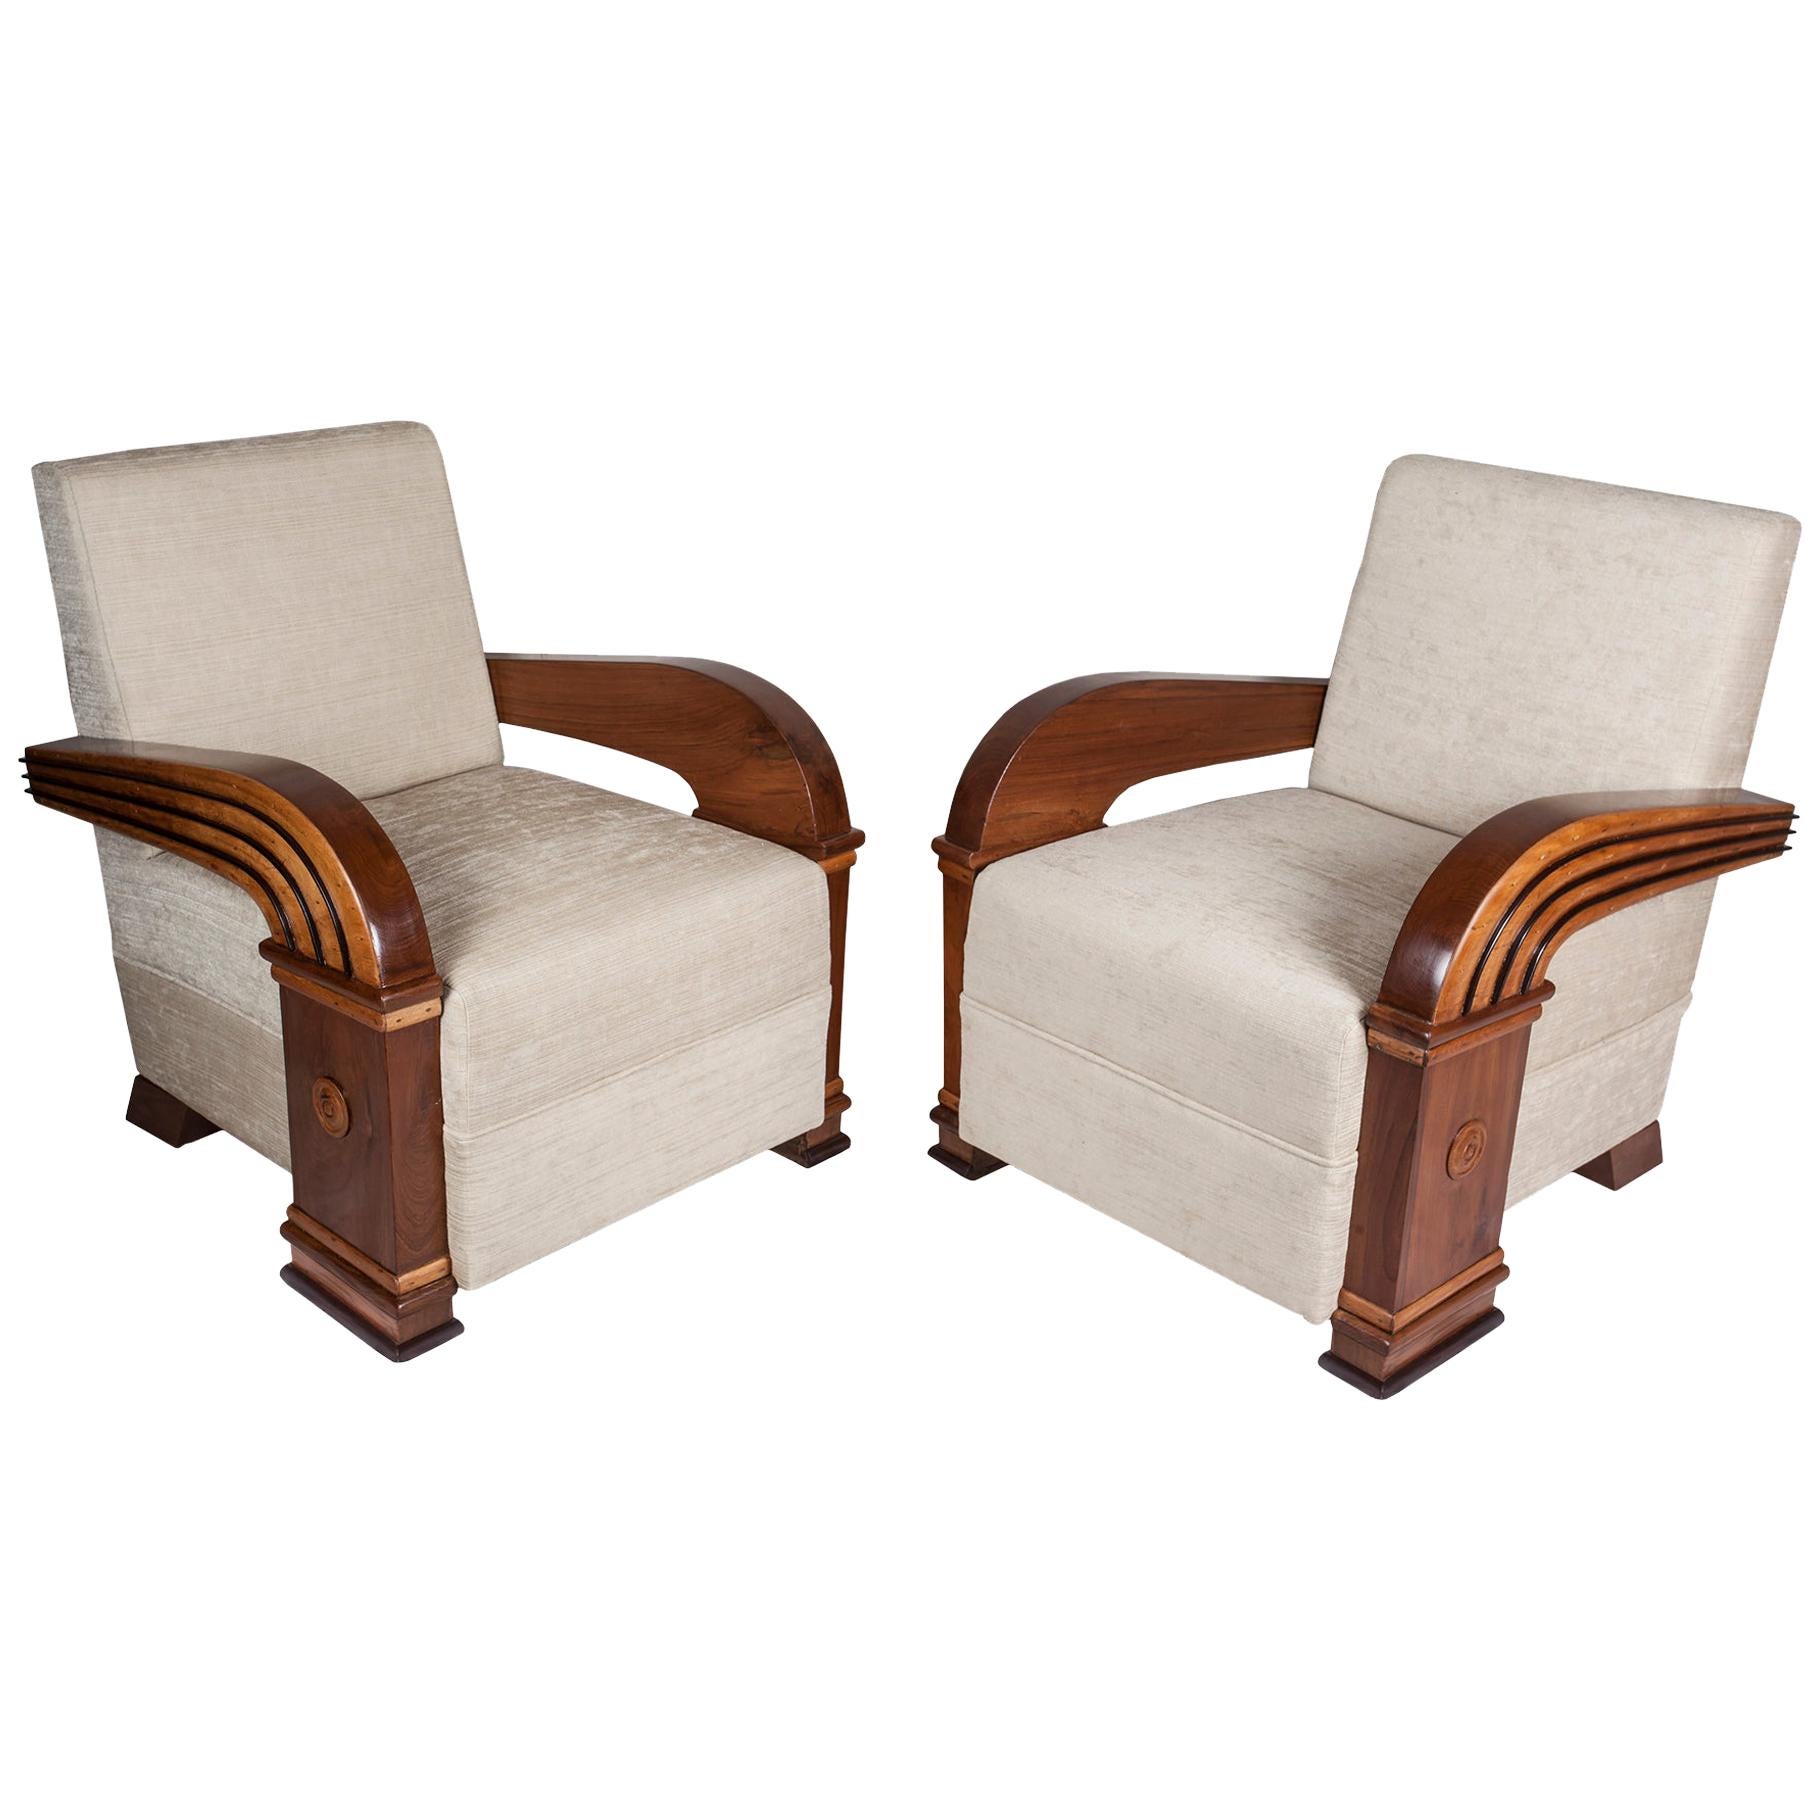 Pair of Art Deco Teak Club Chairs, European